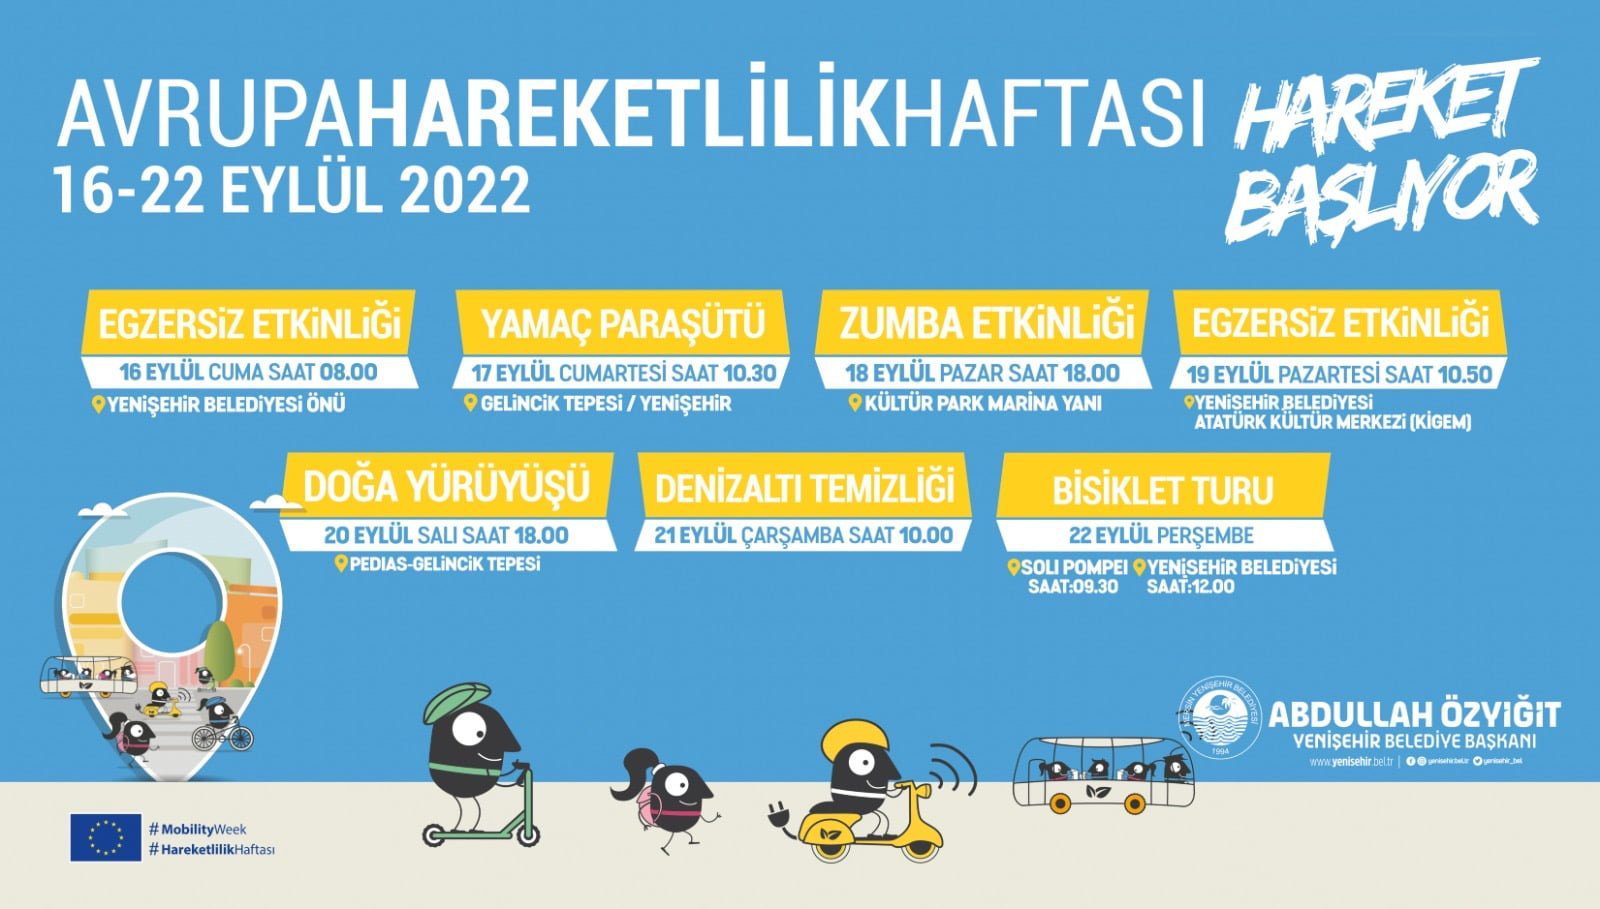 Yenişehir Belediyesi Avrupa Hareketlilik Haftası’na hazır